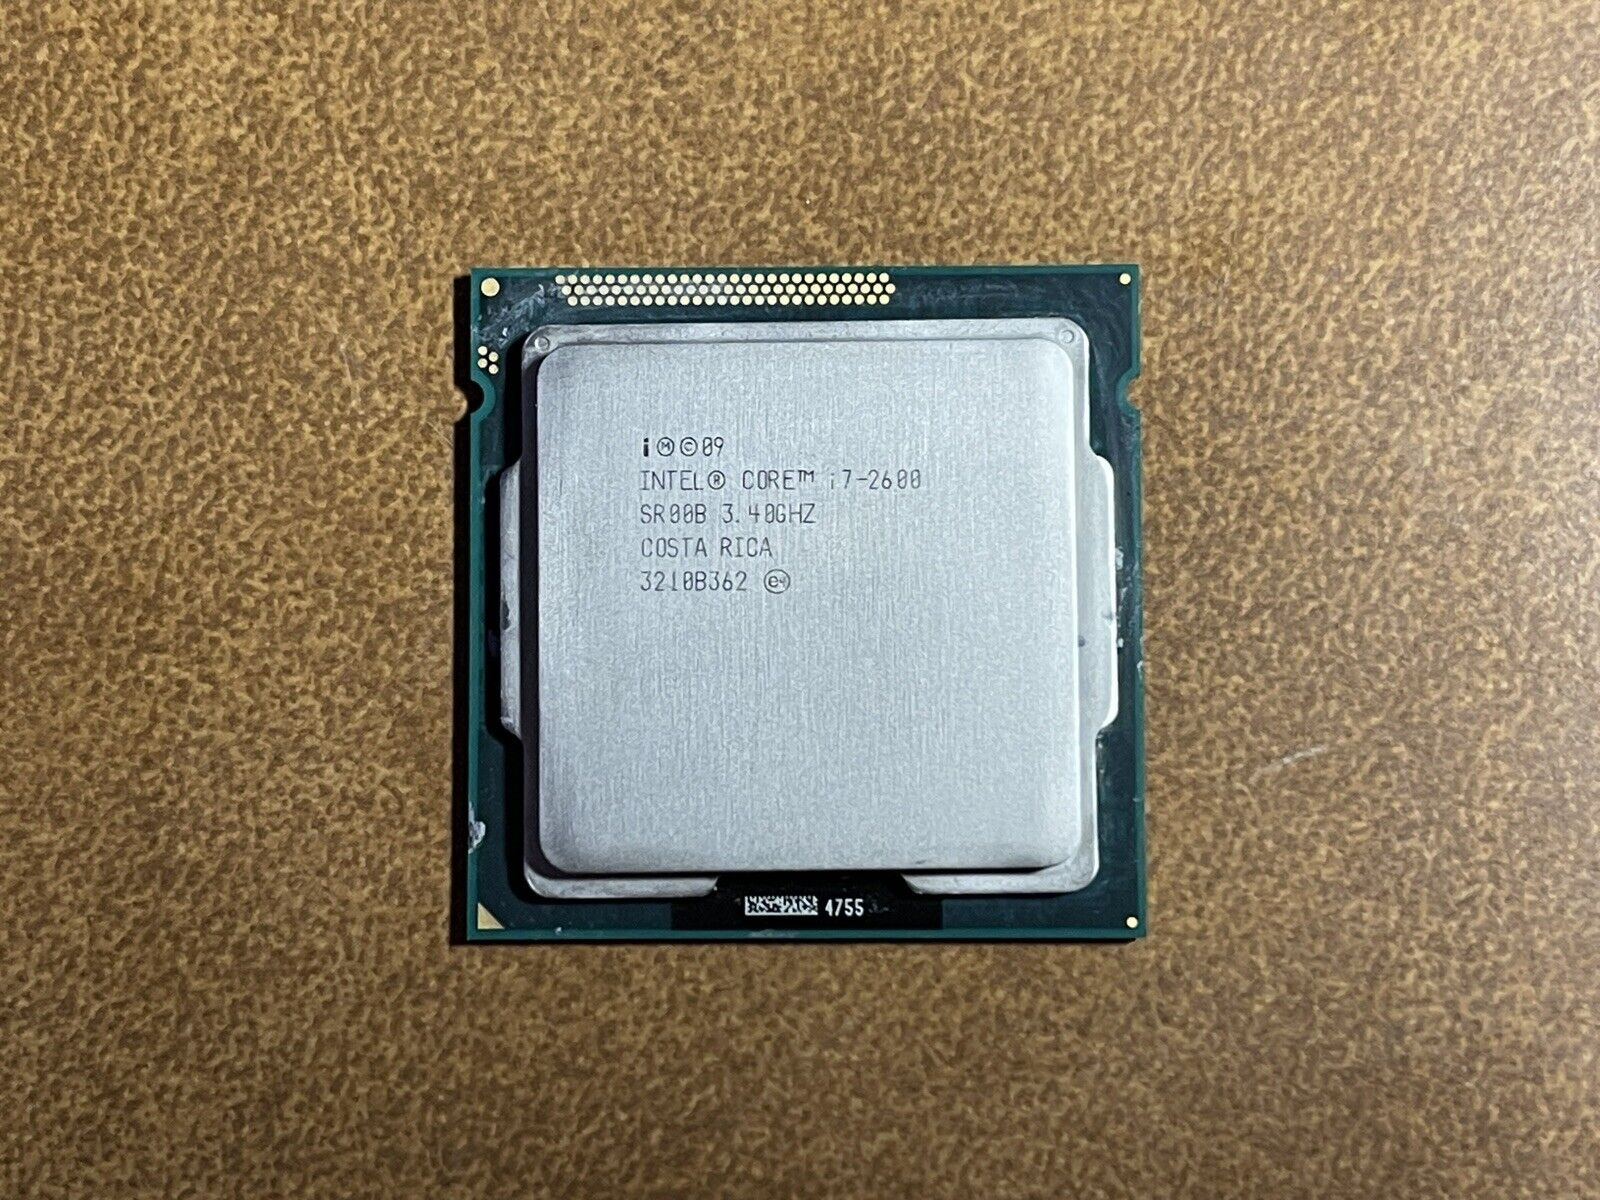 Intel Core i7-2600 3.4GHz Quad-Core Processor (CM8062300834302)